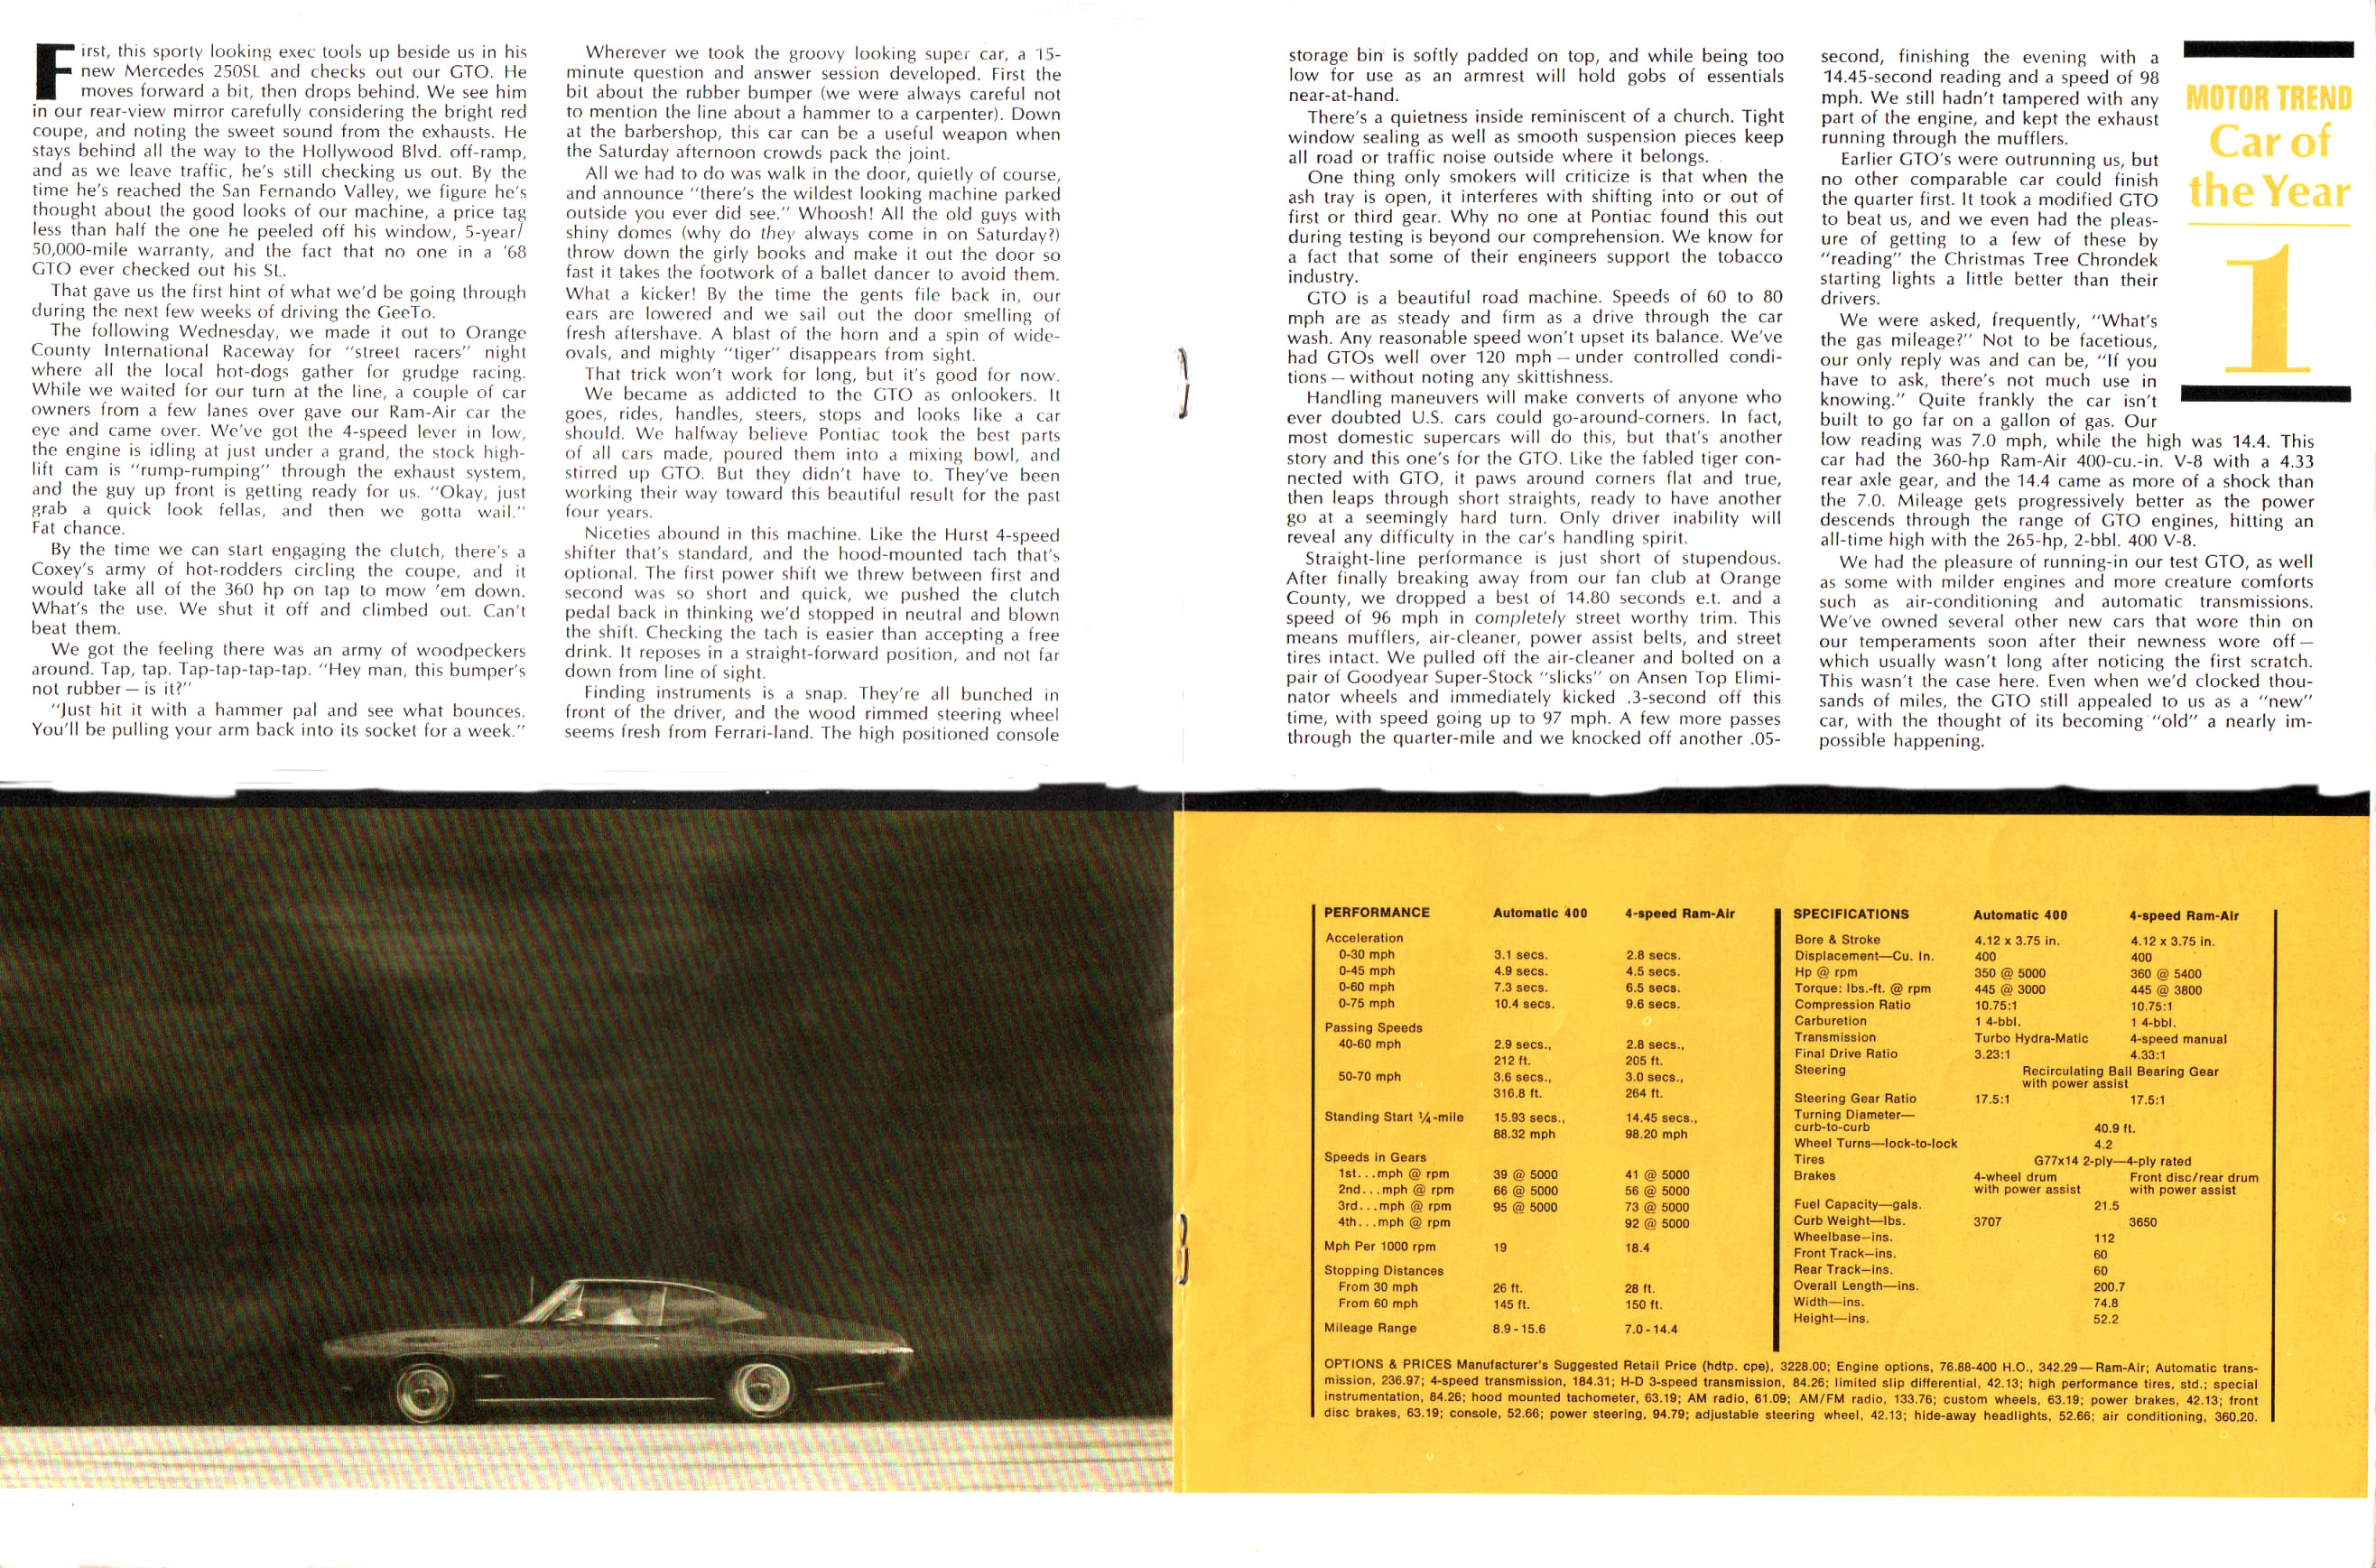 1968_Pontiac_GTO_Reprint-12-13